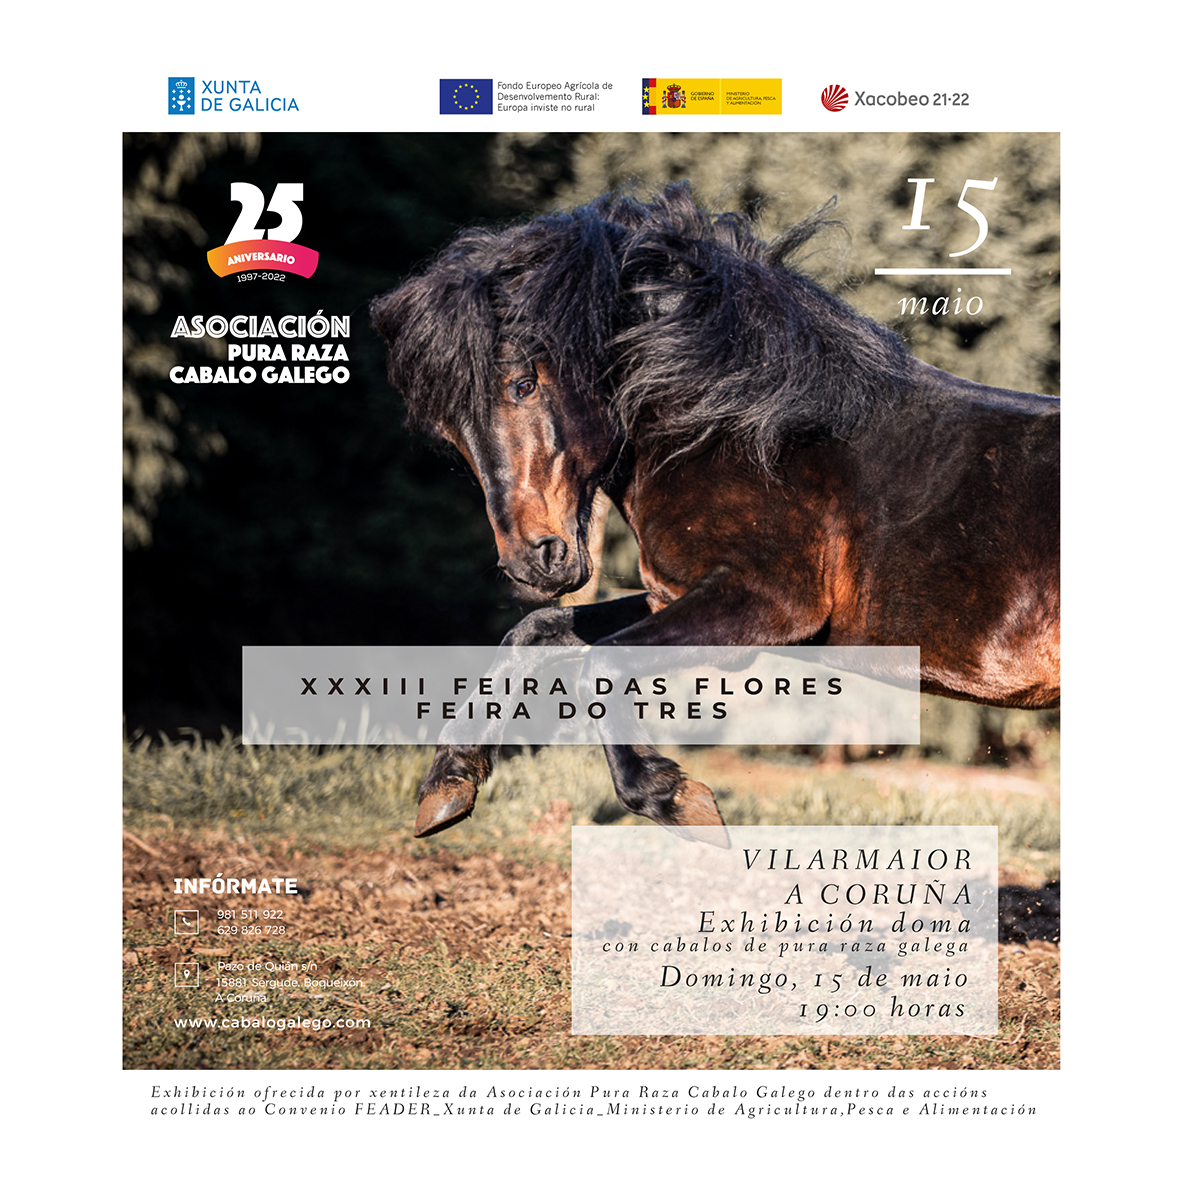 Exhibición de Doma con cabalos de pura raza galega XXXIII Feira dasFlores 2022. Vilarmaior. A Coruña.